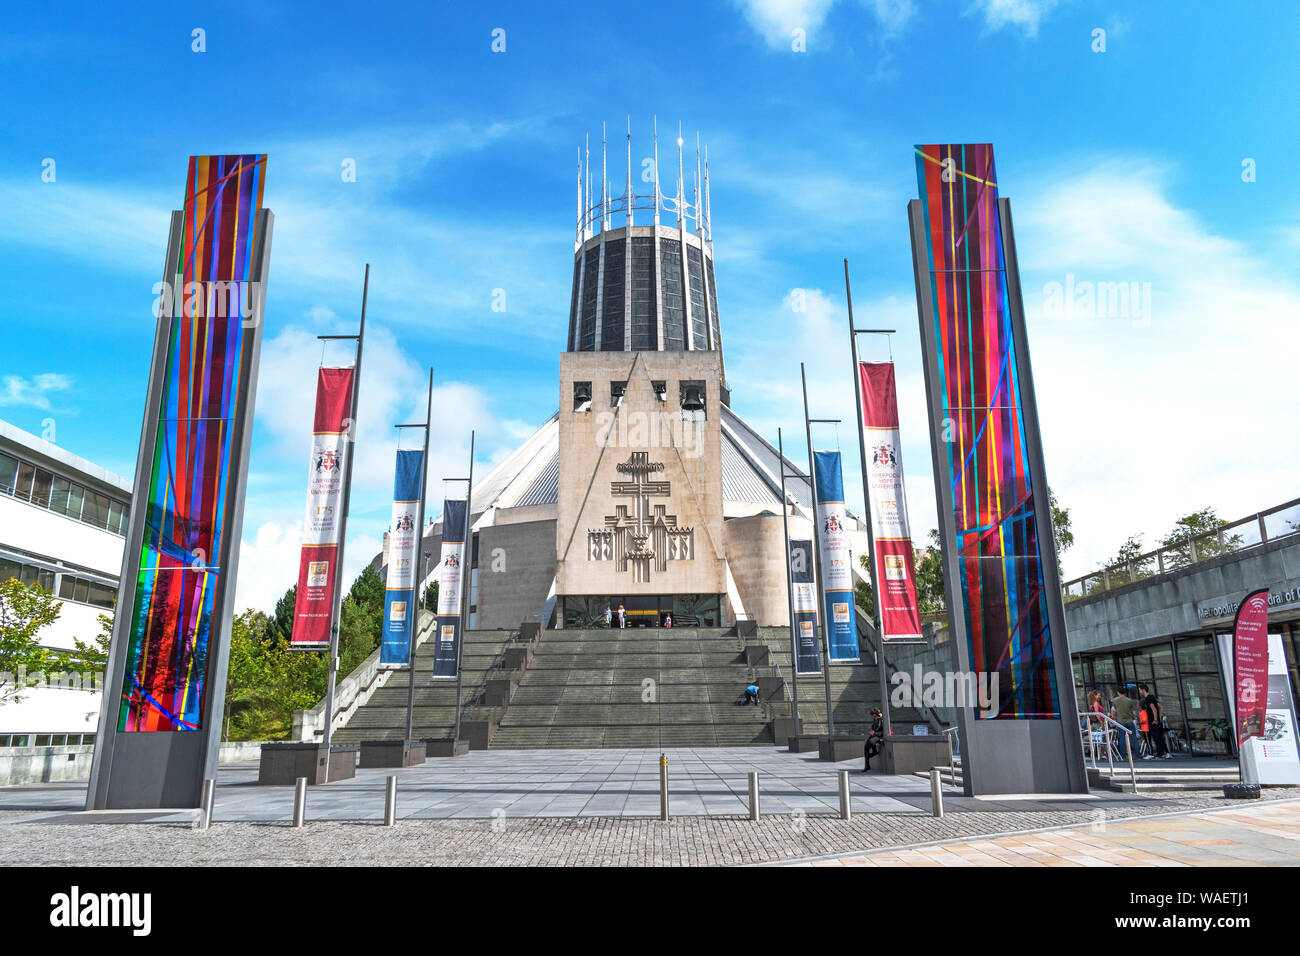 Cathédrale métropolitaine de Liverpool, Liverpool, Angleterre, Grande-Bretagne, Royaume-Uni, la plus grande cathédrale catholique du pays, un bâtiment classé grade II. Banque D'Images